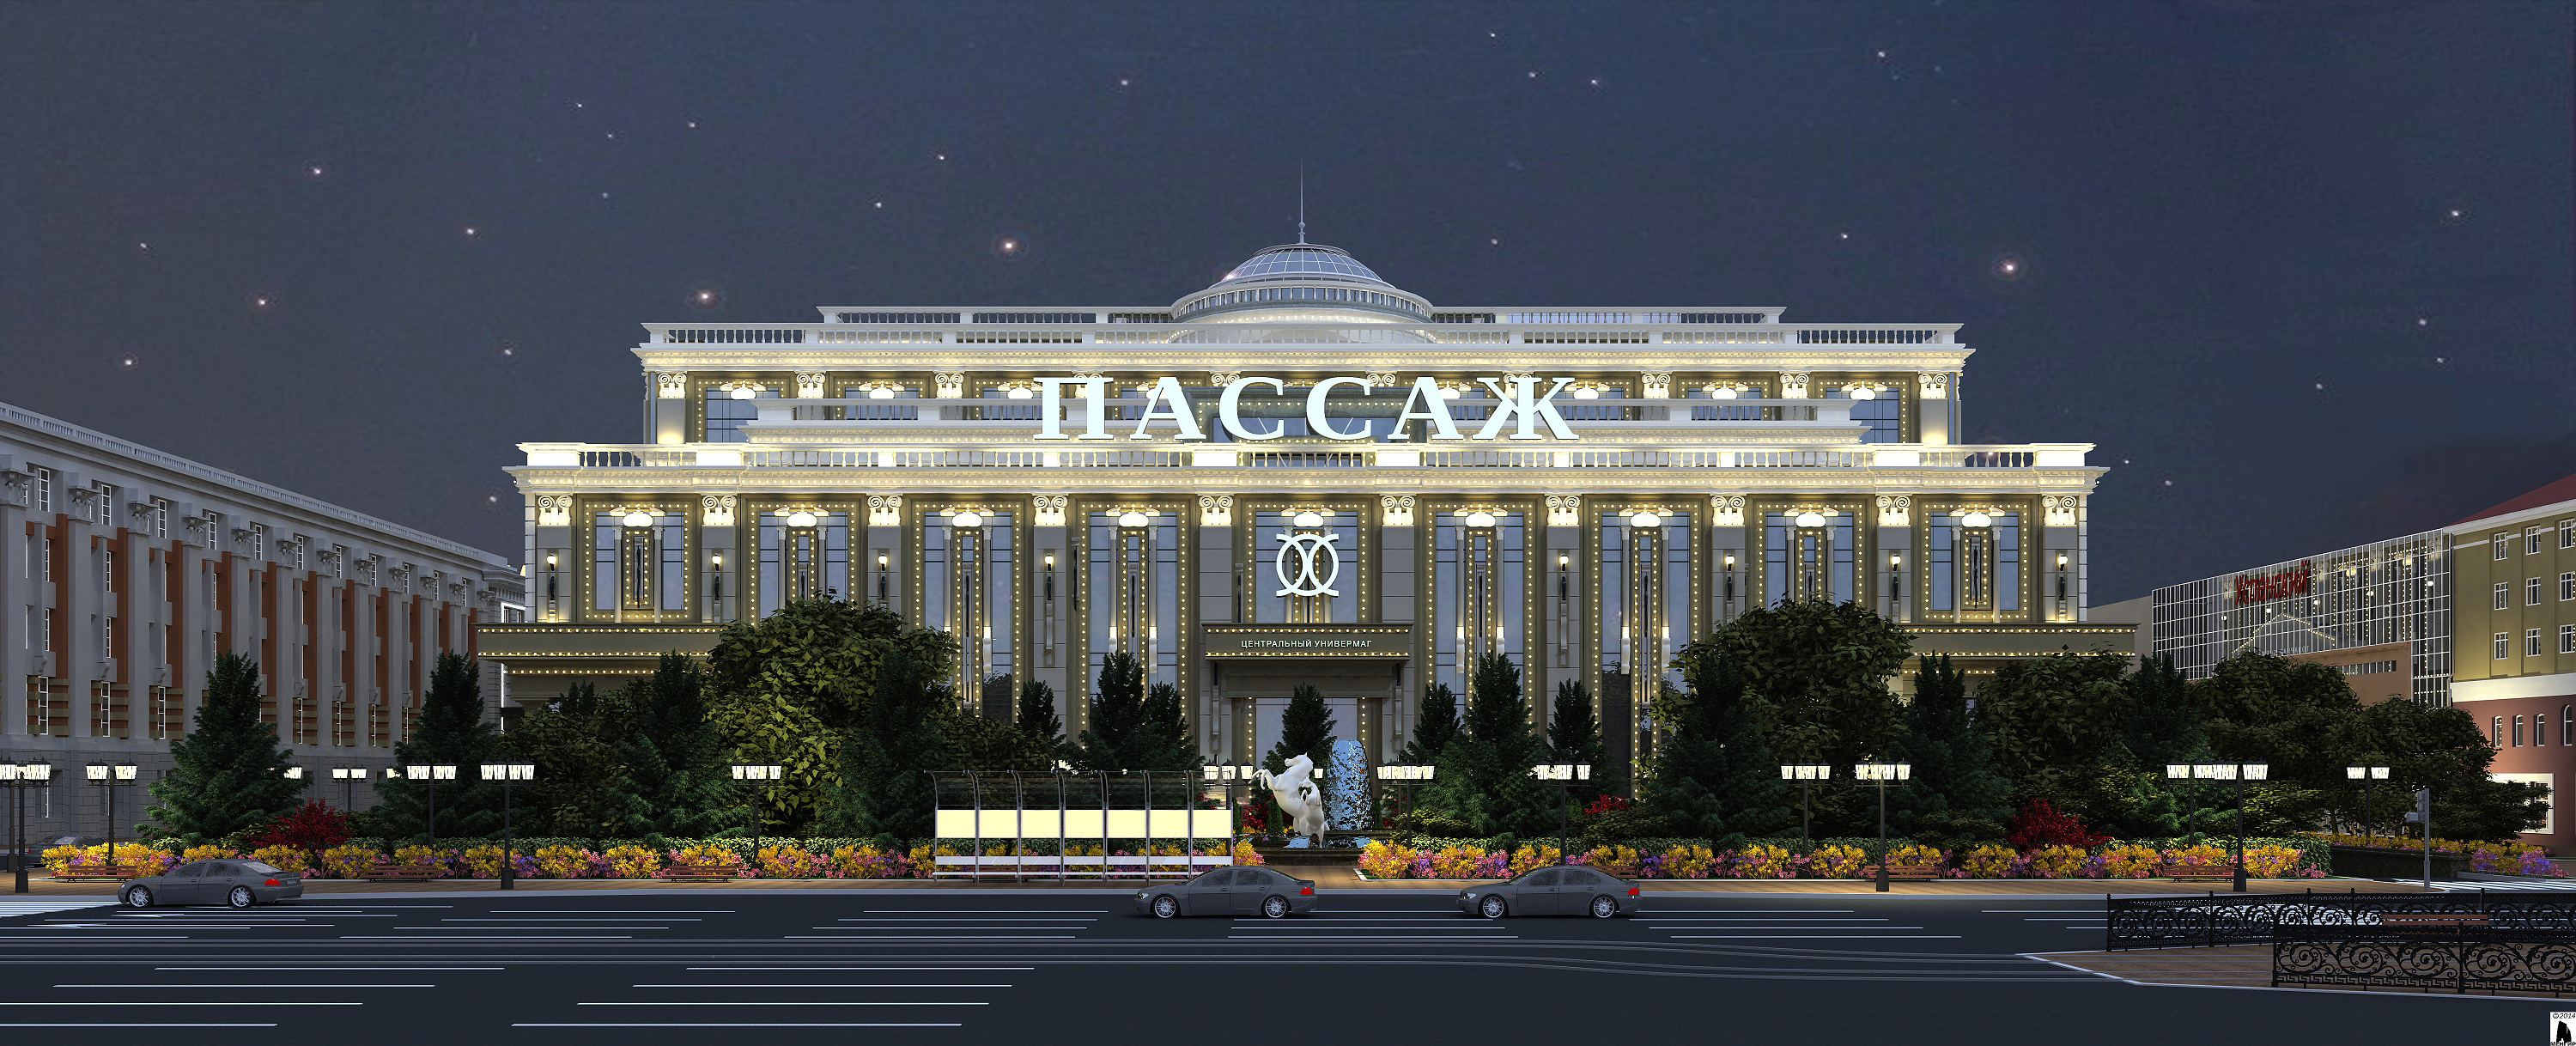 В Екатеринбурге откроется торговый центр с архитектурным акцентом на богатство уральской земли  - Фото 2